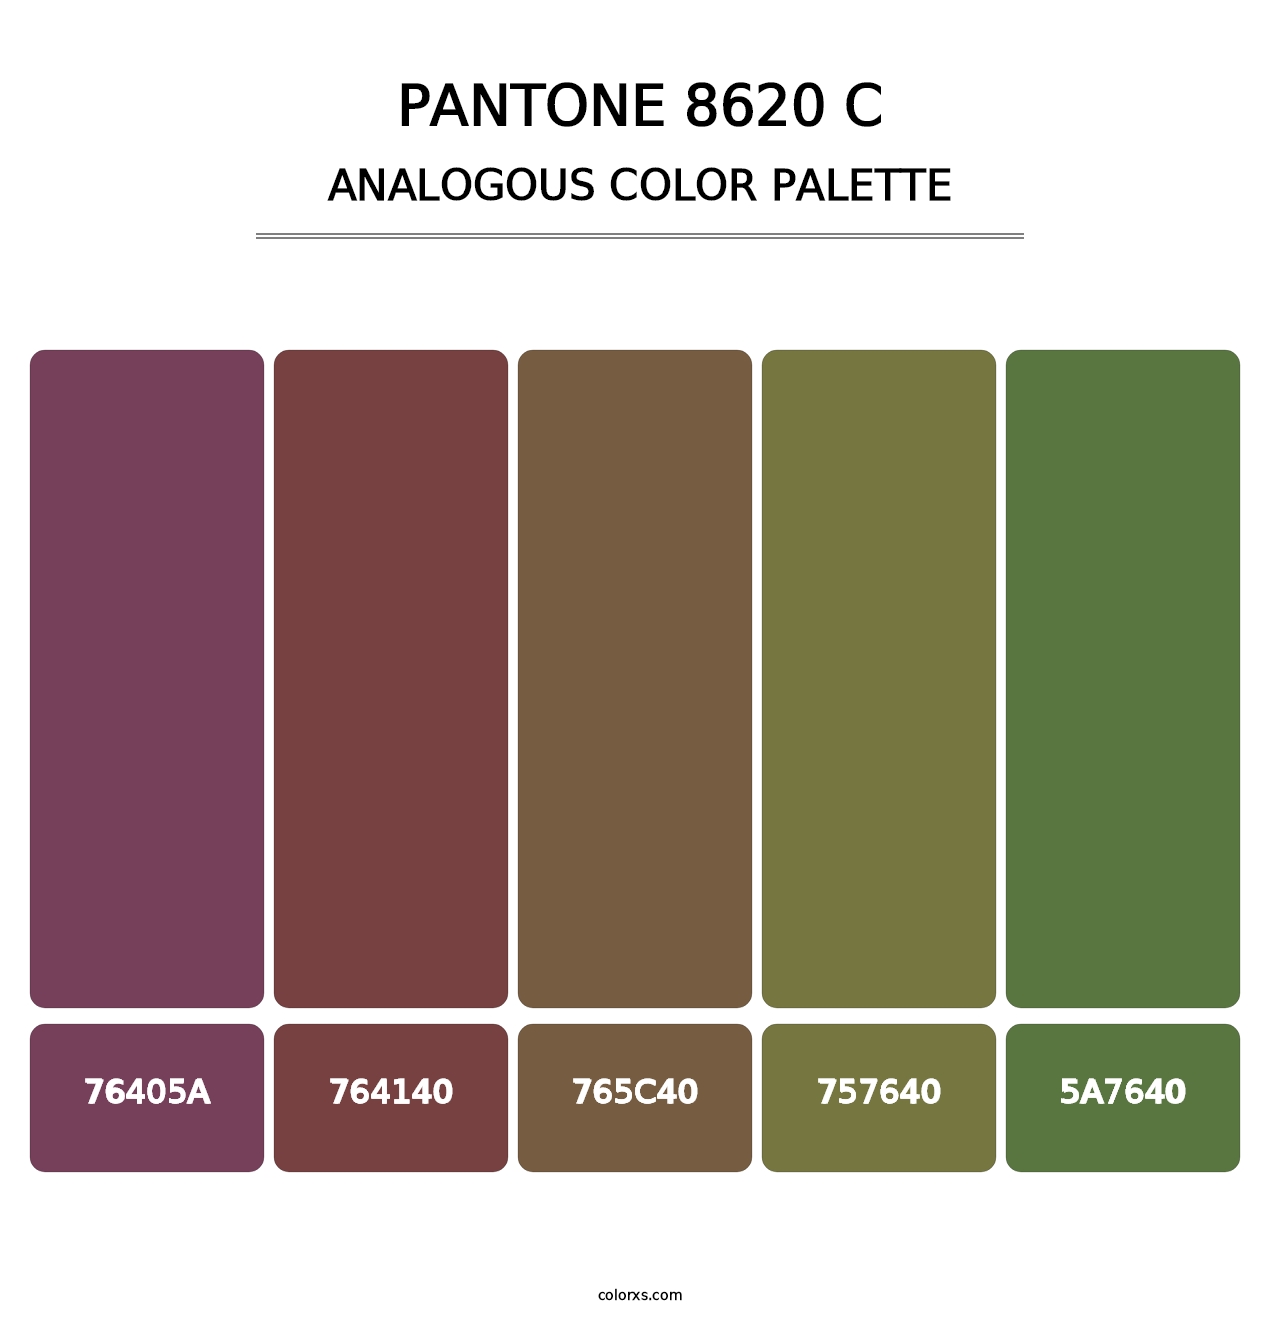 PANTONE 8620 C - Analogous Color Palette